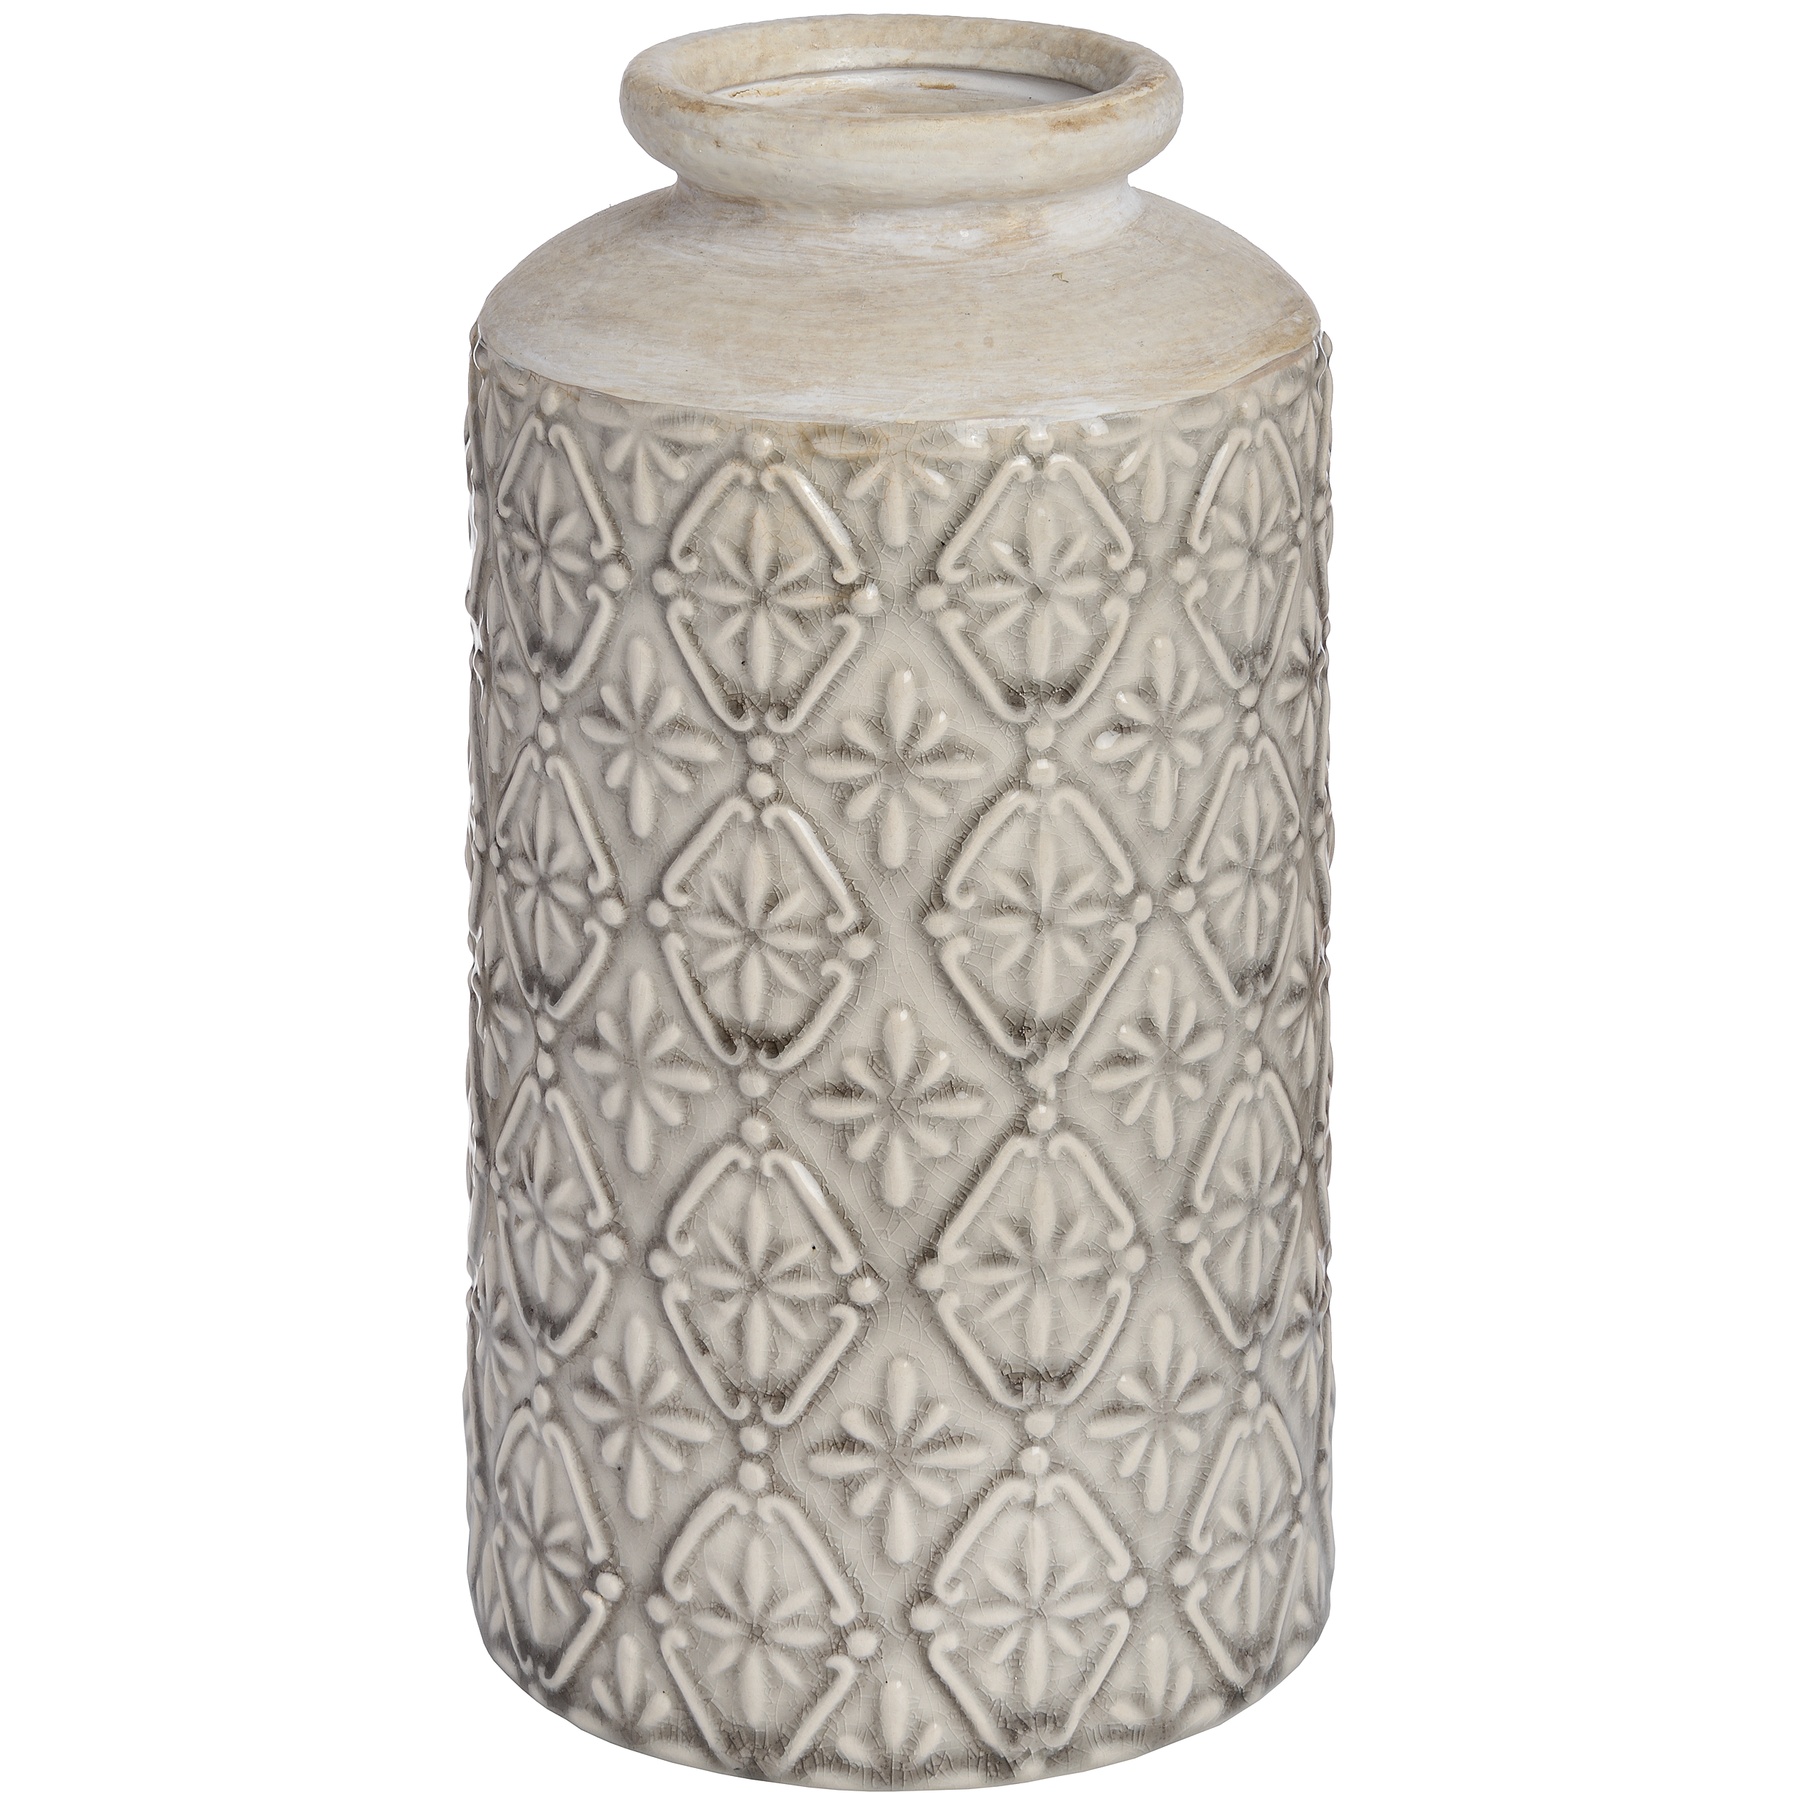 Medium Nero Vase - Image 1